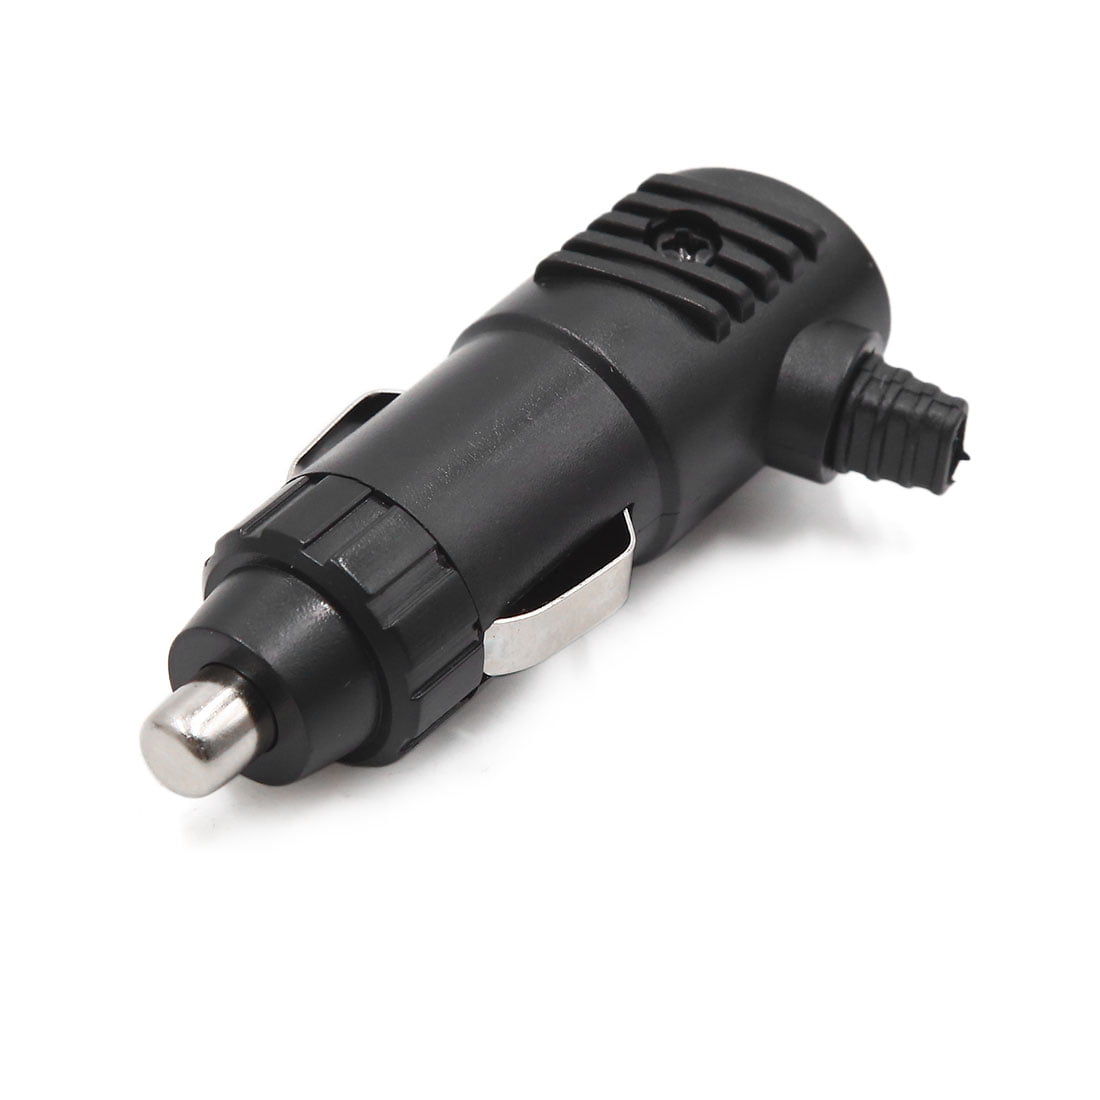 Car Lighter Charger Socket Power Plug Outlet Adapter Connector 12V 24V